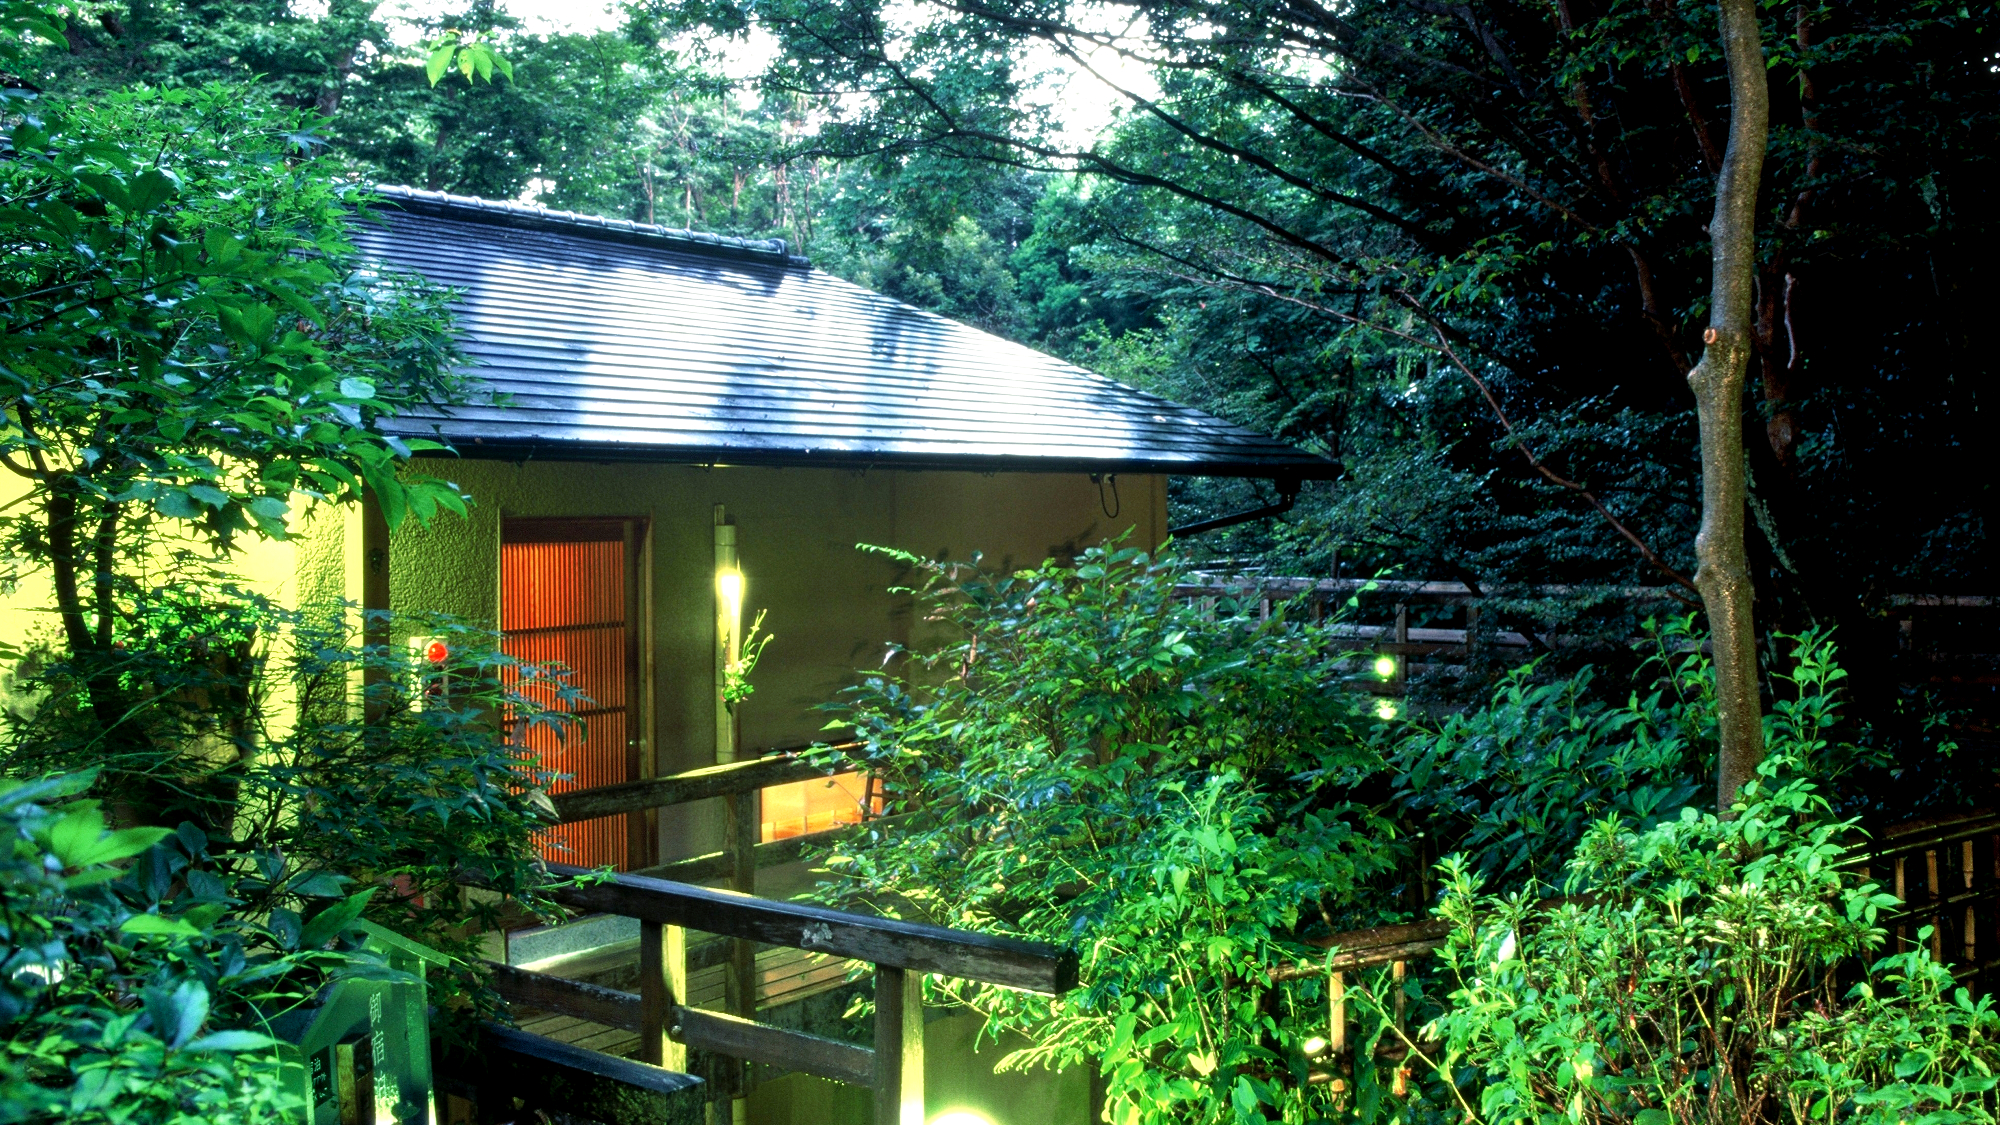 金婚式の記念に老夫婦が楽しめる伊豆、箱根方面の温泉旅館を教えてください。費用は、二人で一泊二日６万円程度を予定しております。